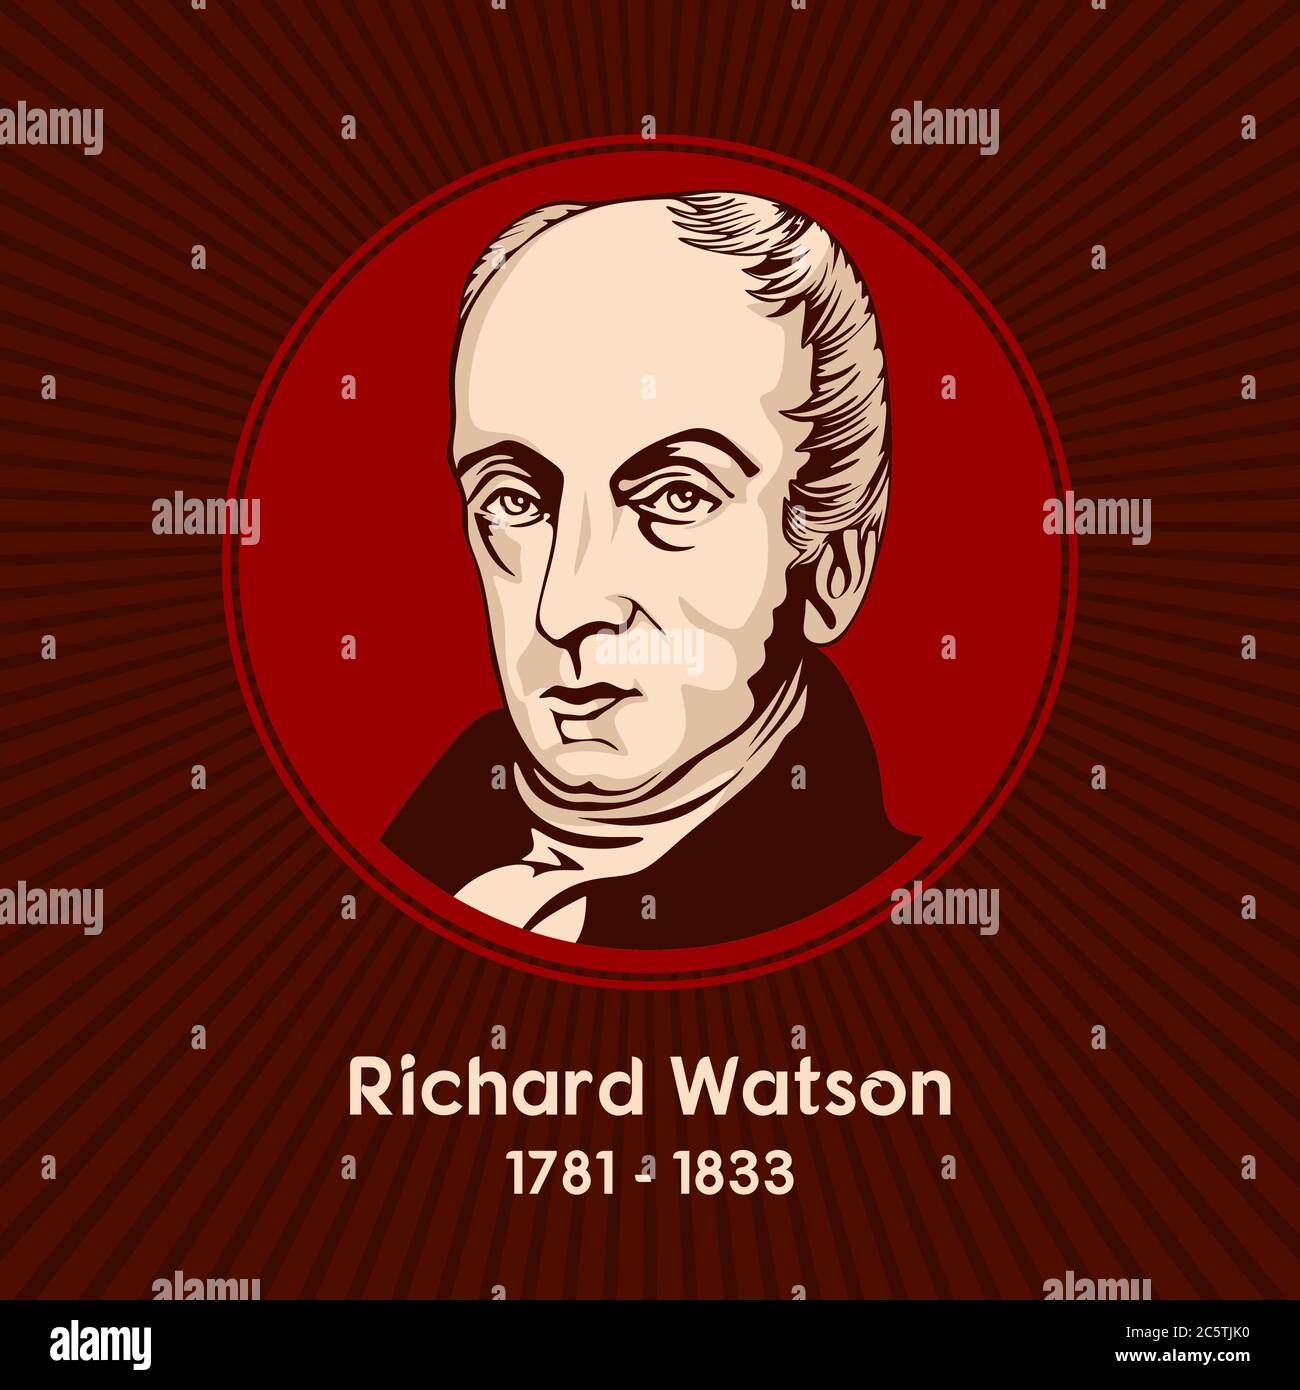 Richard Watson (1781 - 1833) était un théologien méthodiste britannique qui était l'une des figures les plus importantes du méthodisme du XIXe siècle. Illustration de Vecteur